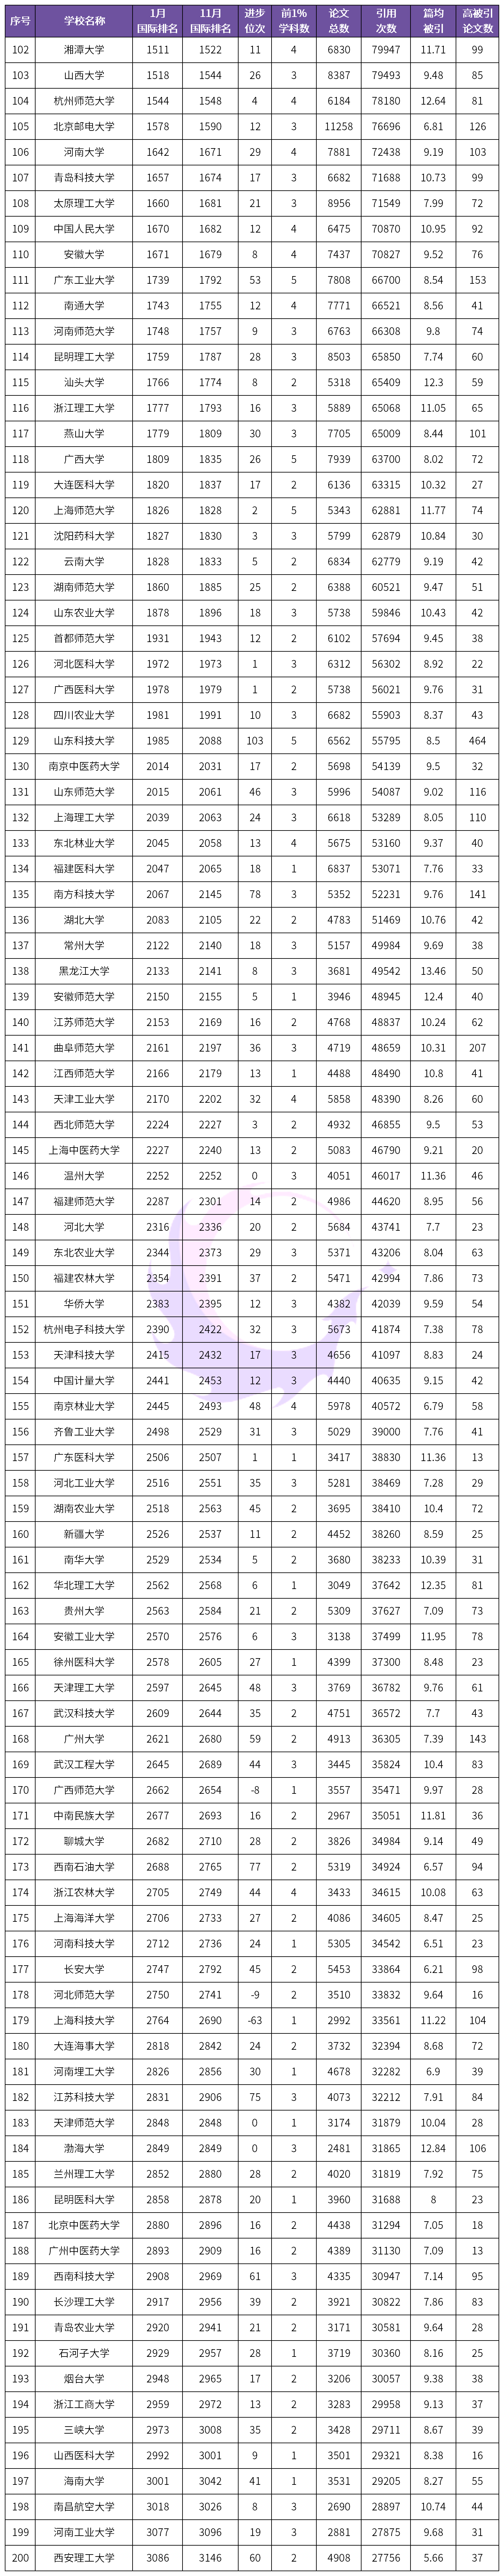 2020中国大学排名200排名_2020中国大学留学生人数排名200强:第1名并非清华